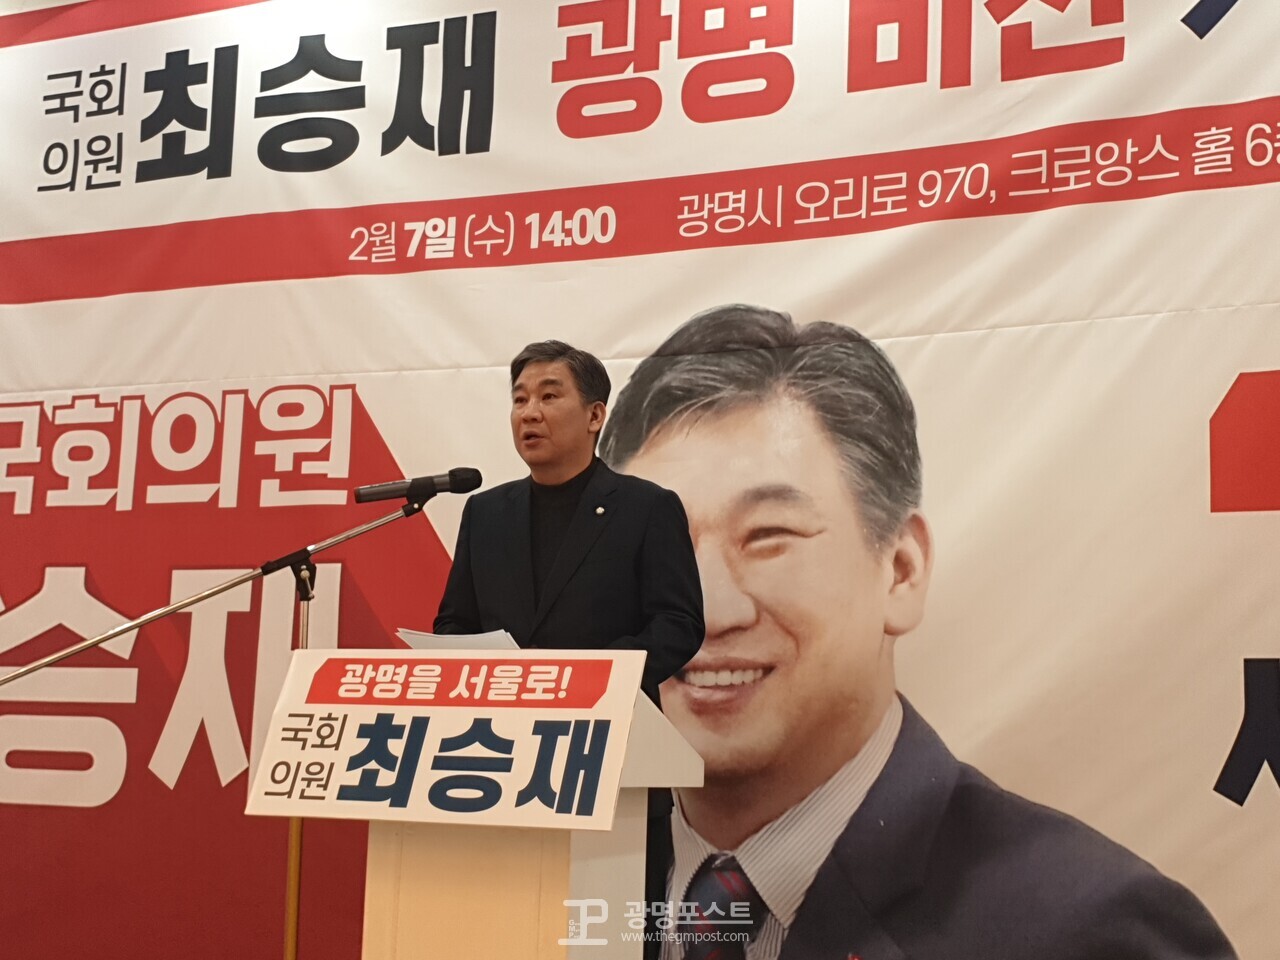 ◐ 사진 설명 = 최승재 국회의원(국민의힘, 비례대표)이 지난 7일 '광명 비전 기자회견'을 개최했다.